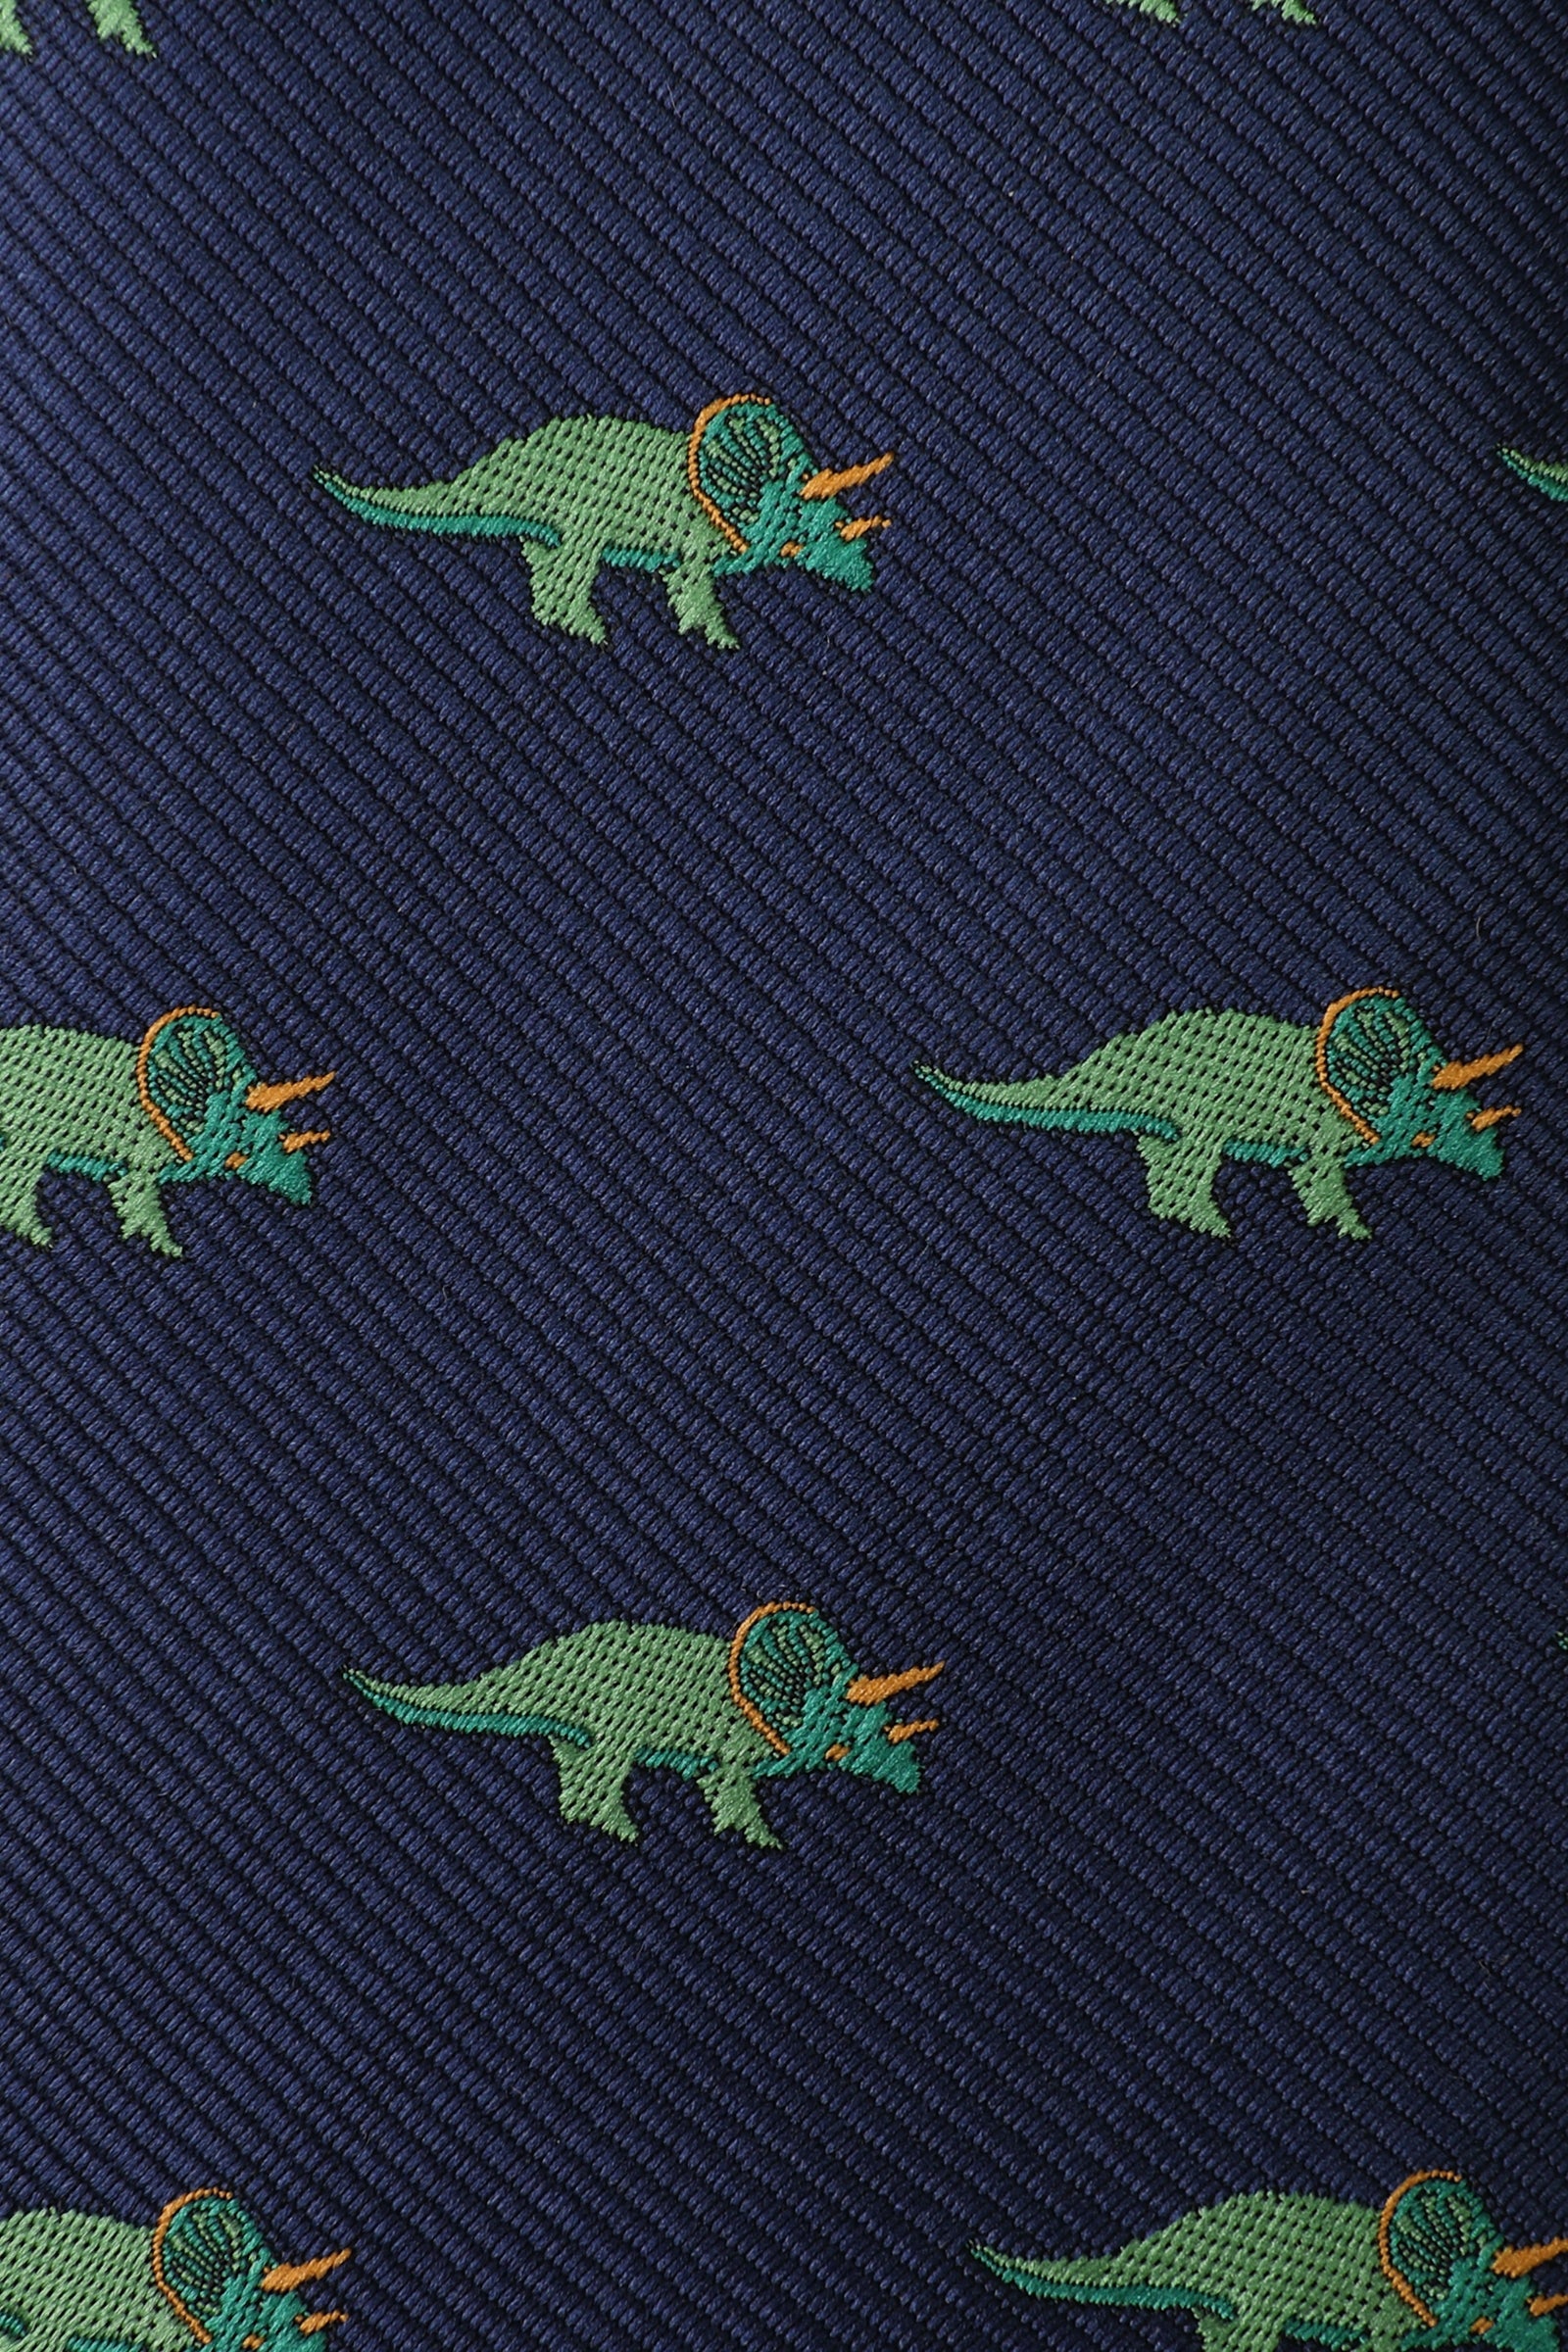 Triceratops Dinosaur Kids Necktie Fabric